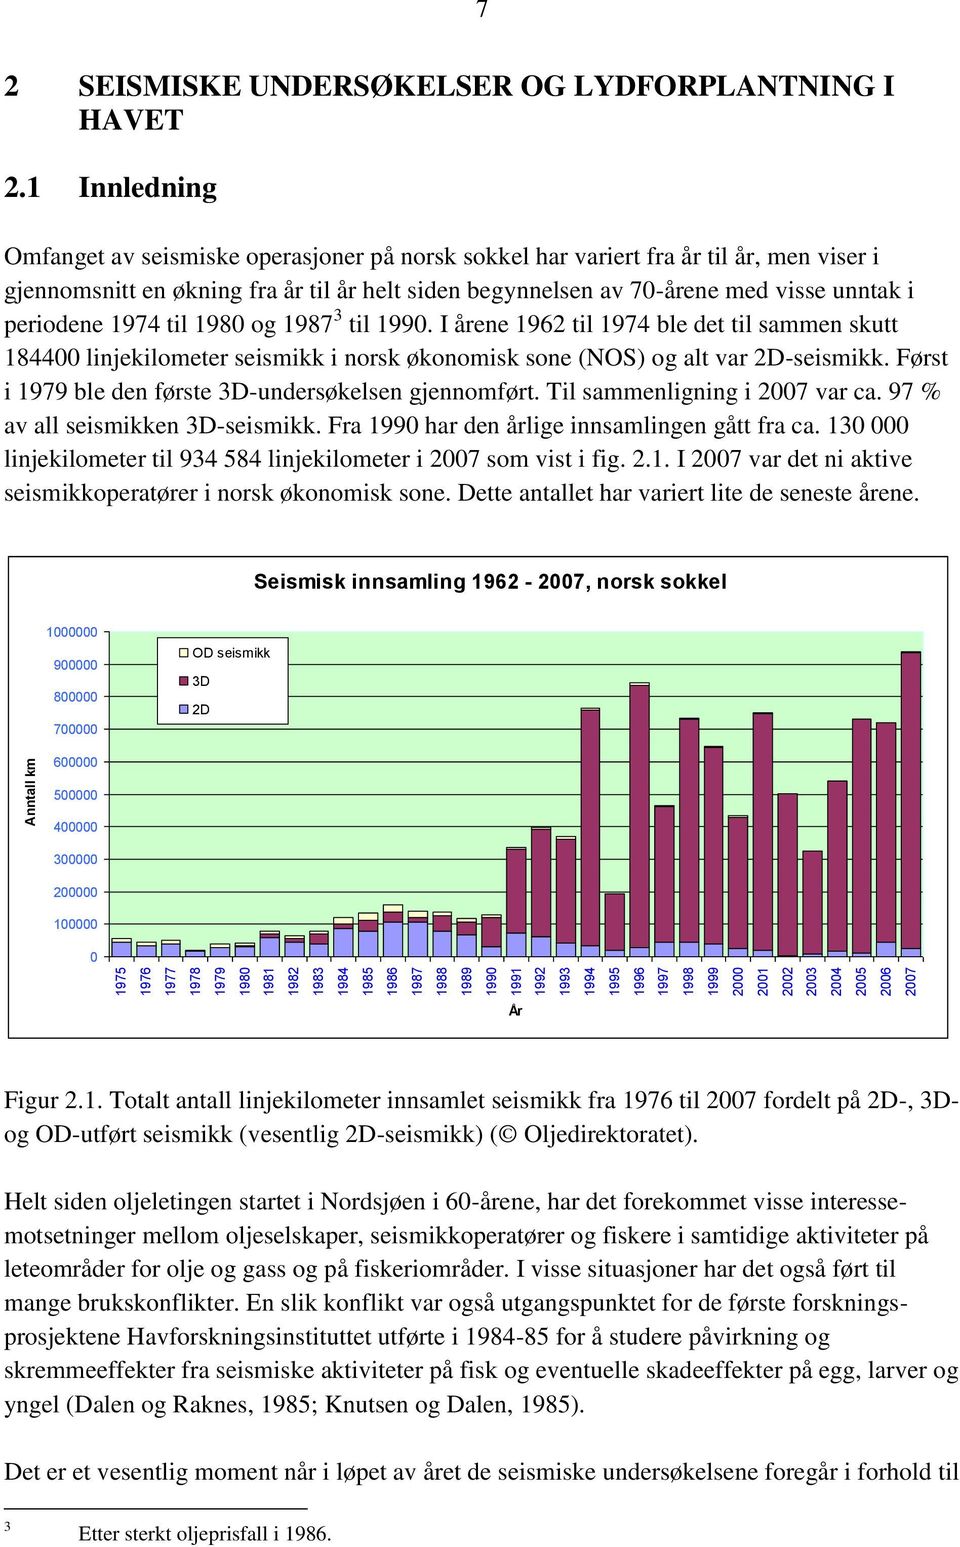 1 Innledning Omfanget av seismiske operasjoner på norsk sokkel har variert fra år til år, men viser i gjennomsnitt en økning fra år til år helt siden begynnelsen av 70-årene med visse unntak i